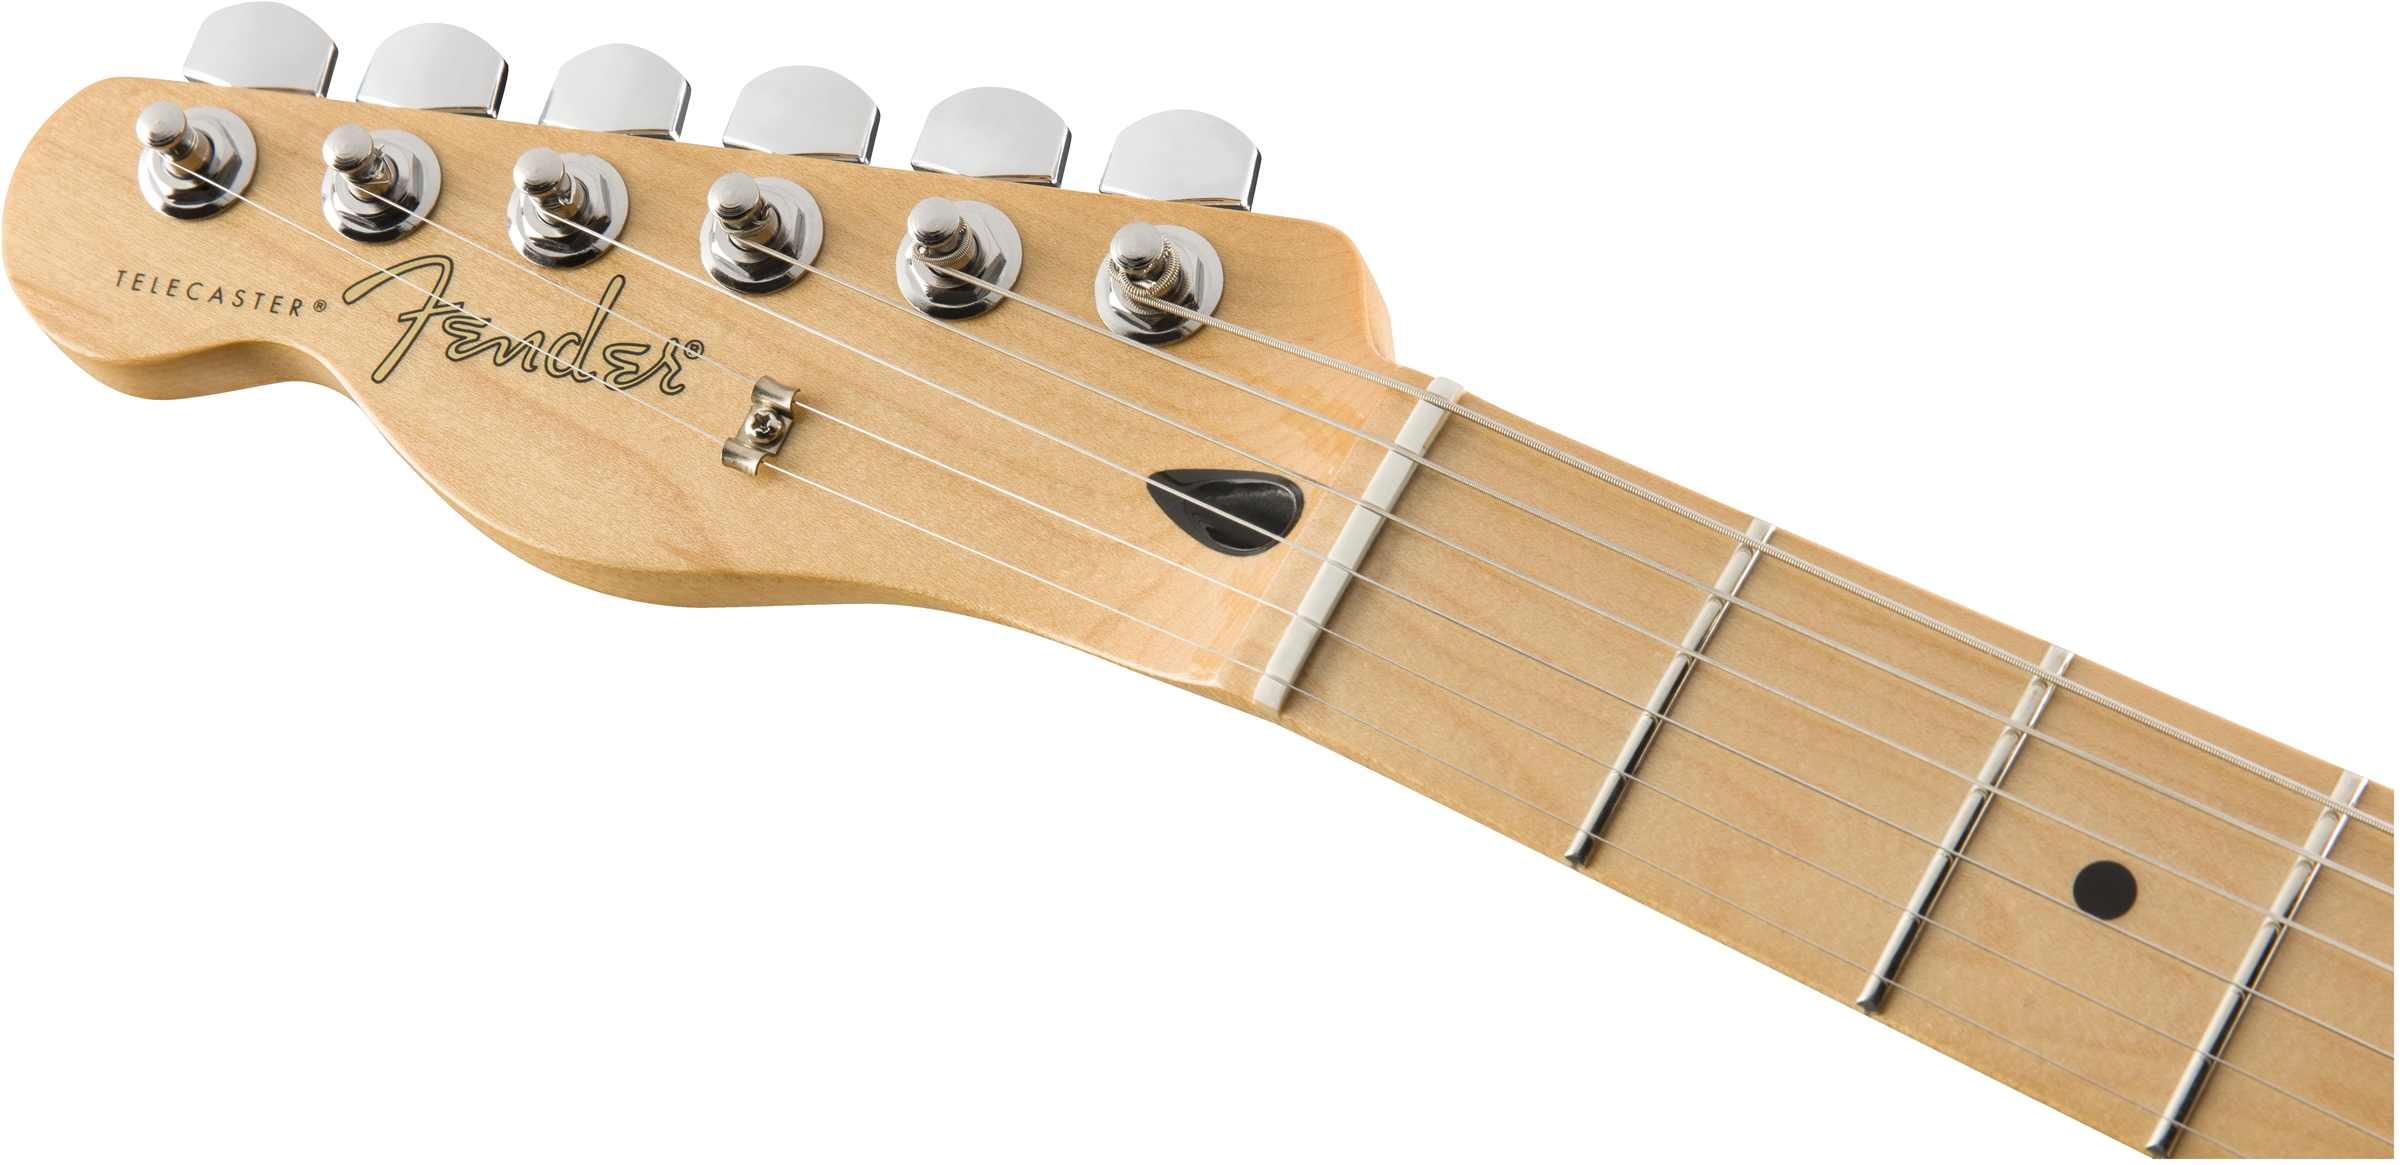 Fender Tele Player Lh Gaucher Mex 2s Mn - Butterscotch Blonde - Guitarra electrica para zurdos - Variation 4